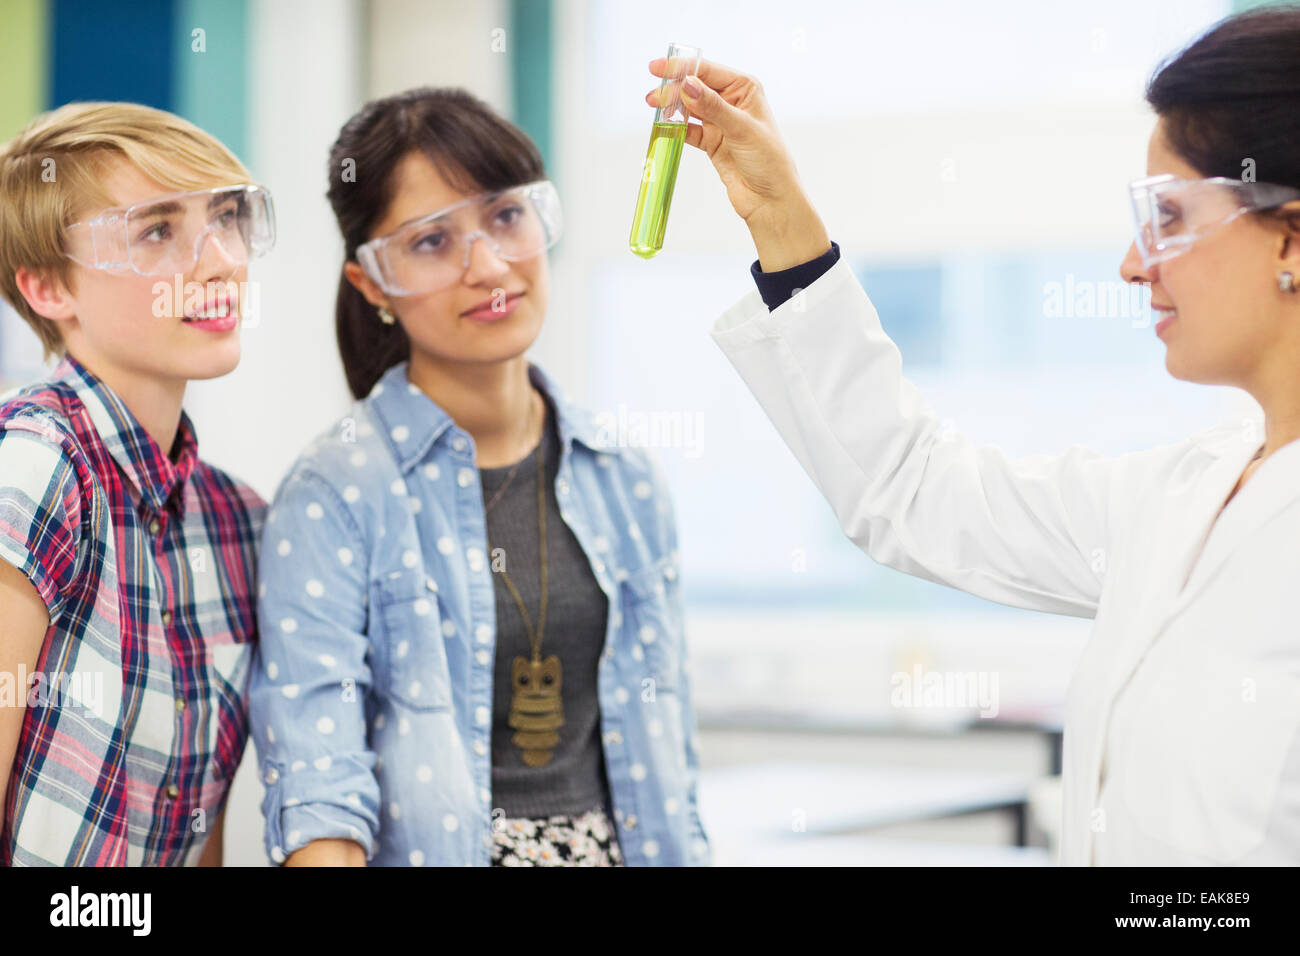 Schüler mit ihrem Lehrer arbeiten im Chemielabor, Lehrer hält Reagenzglas mit grüner Flüssigkeit Stockfoto